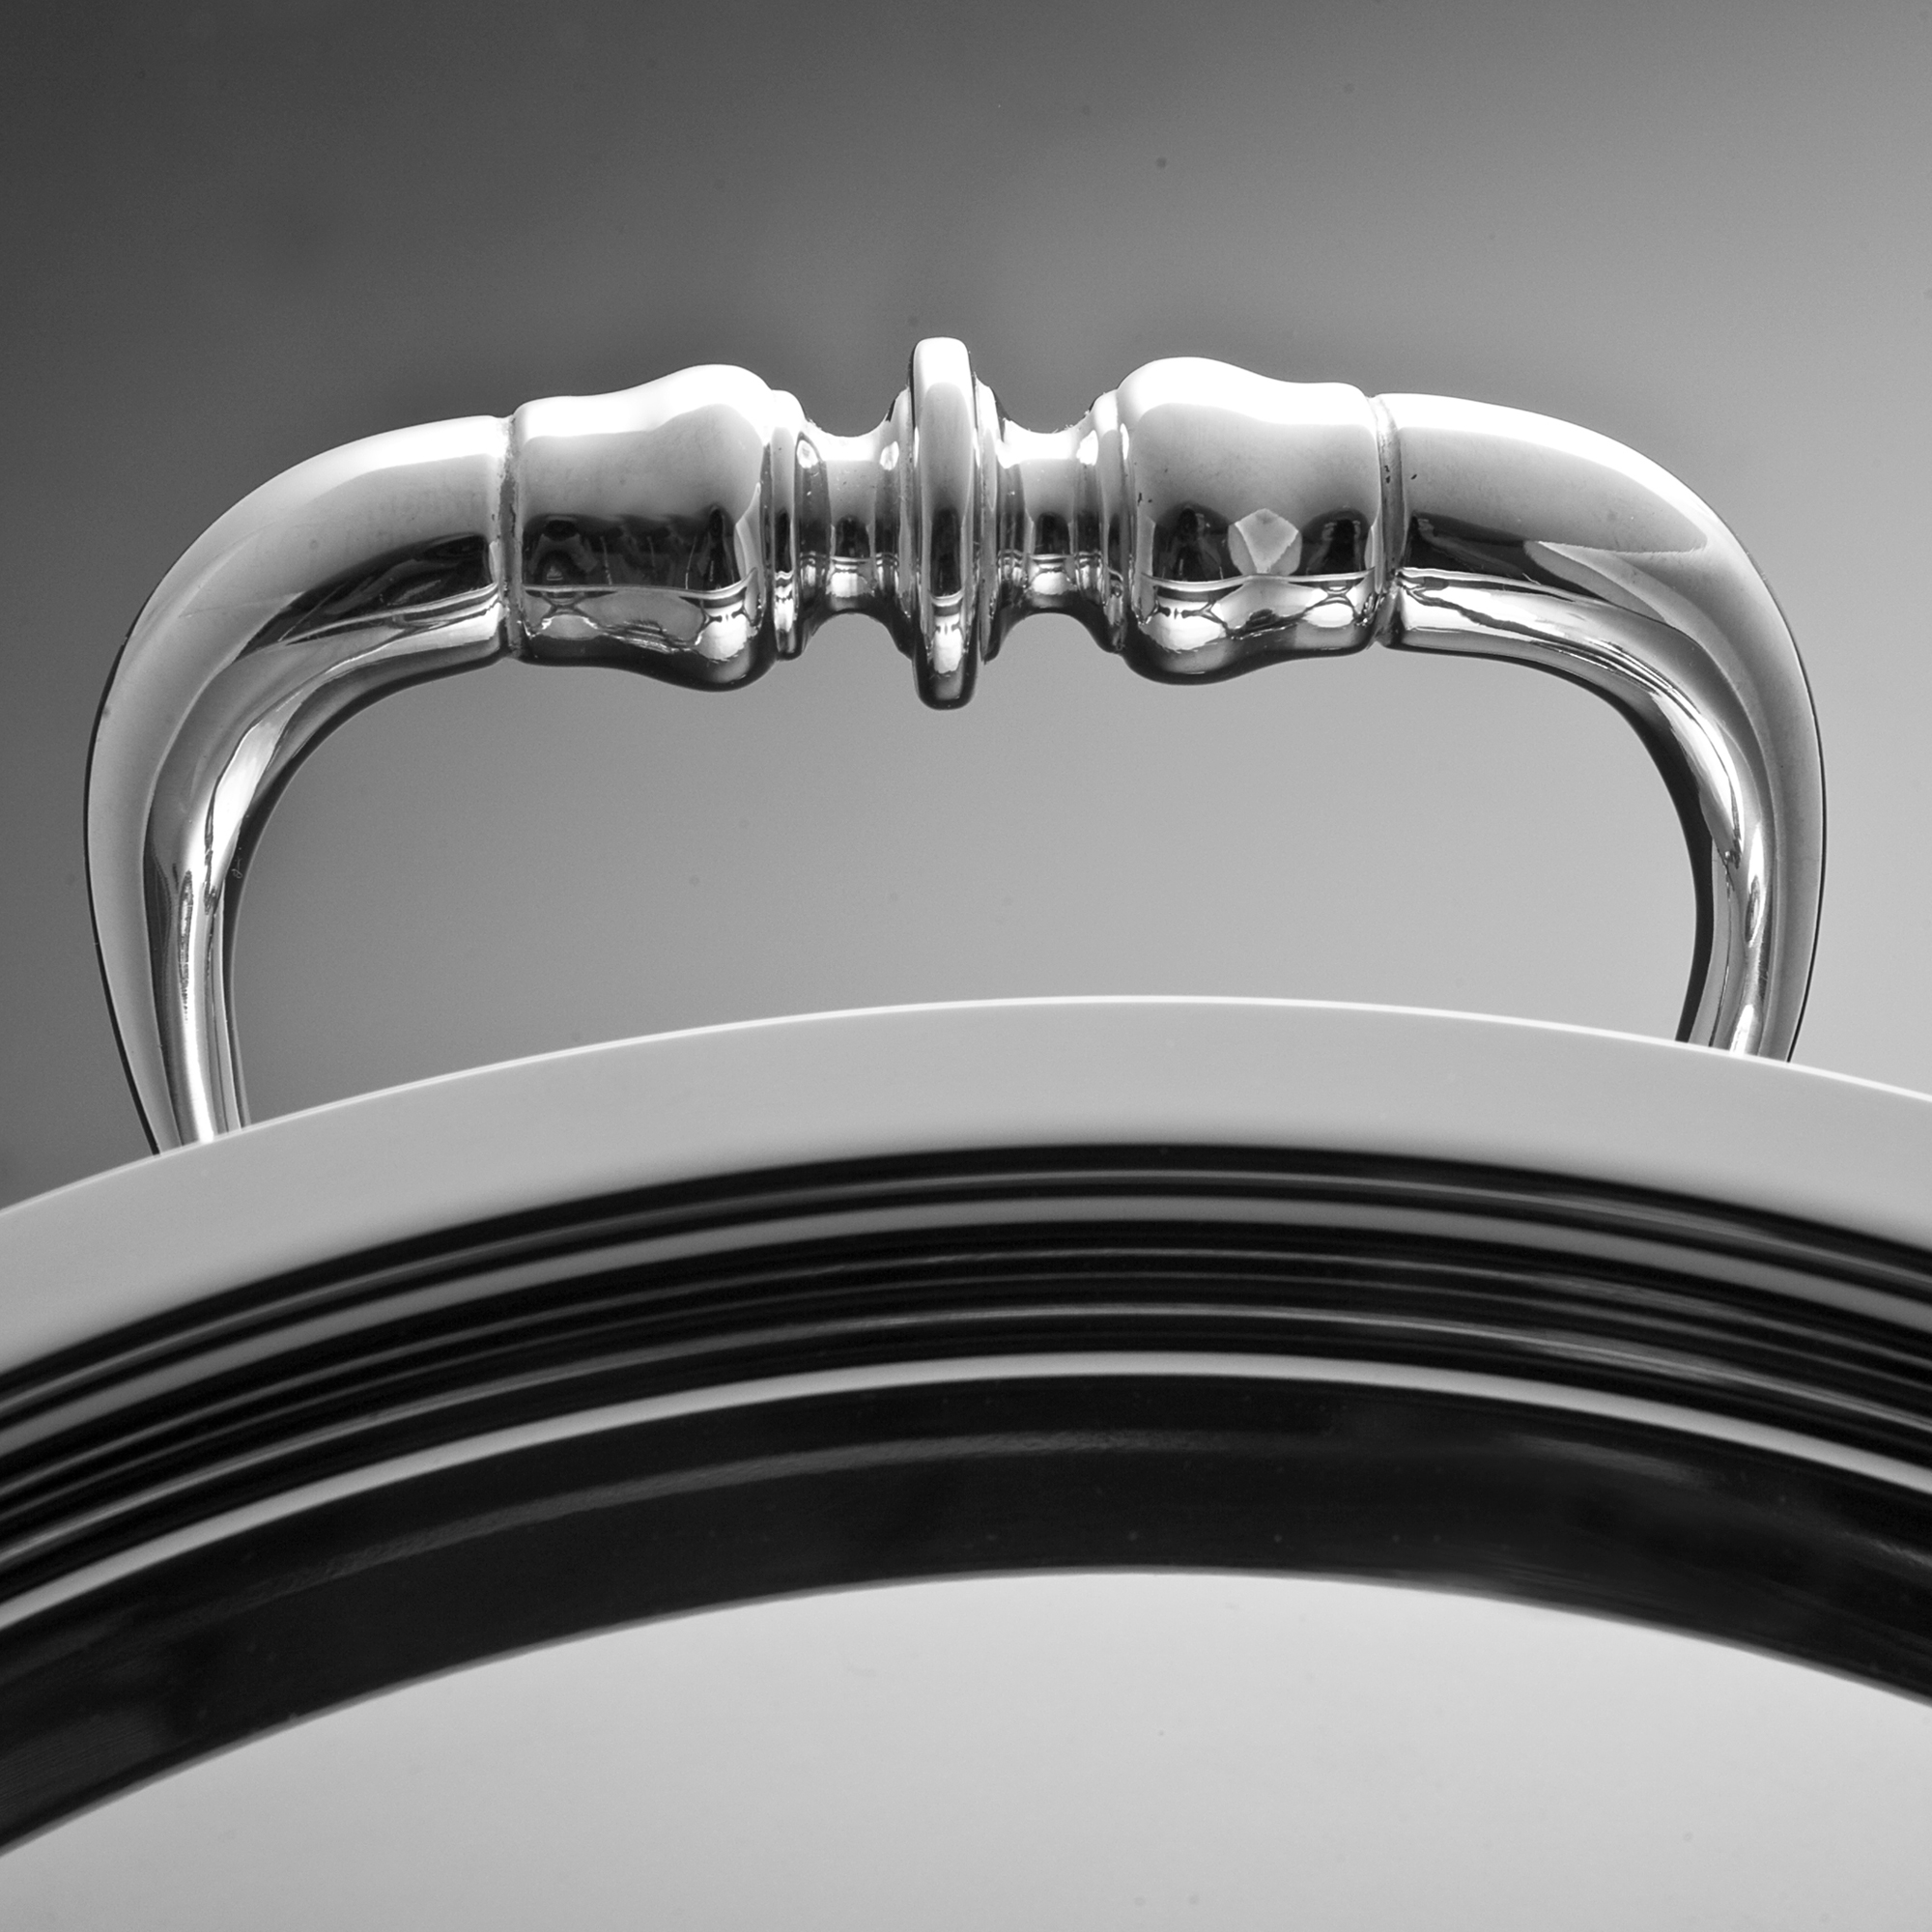 Вок Opus Prima, диаметр 24 см, высота 9,5 см, объем 4 л, нержавеющая сталь, крышка с посеребренной декорированной ручкой